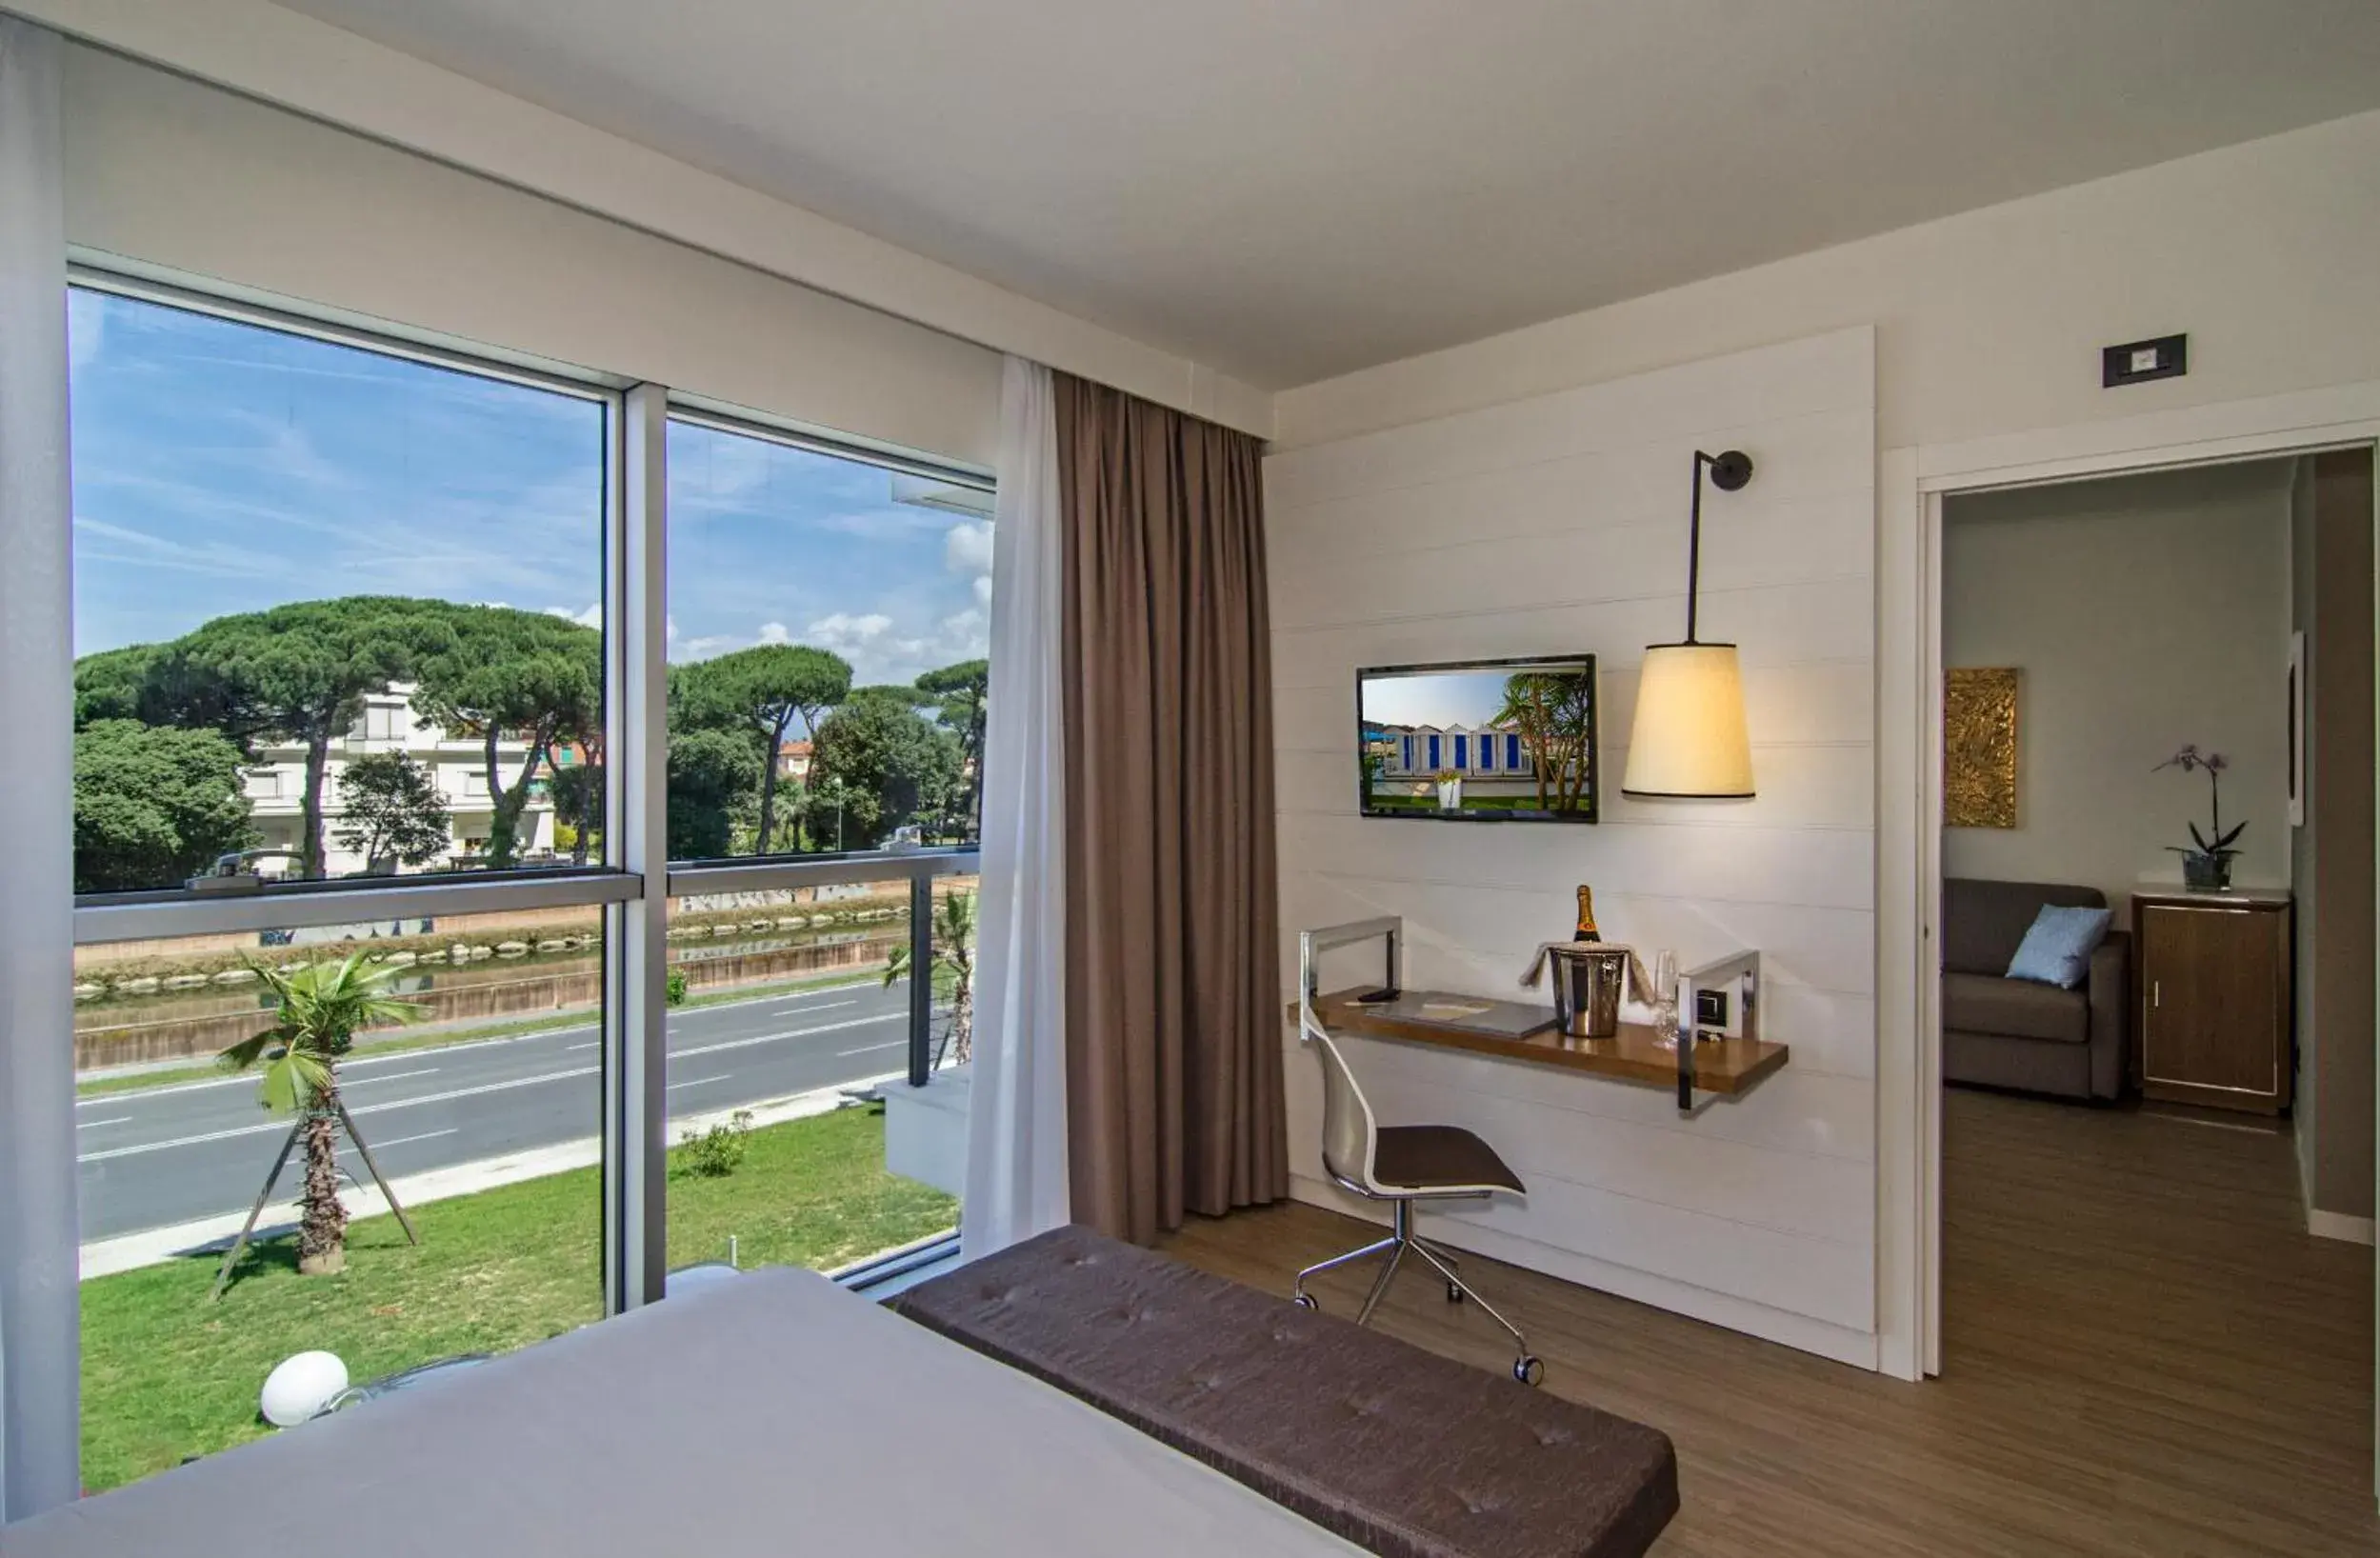 Bedroom in Hotel Viareggio